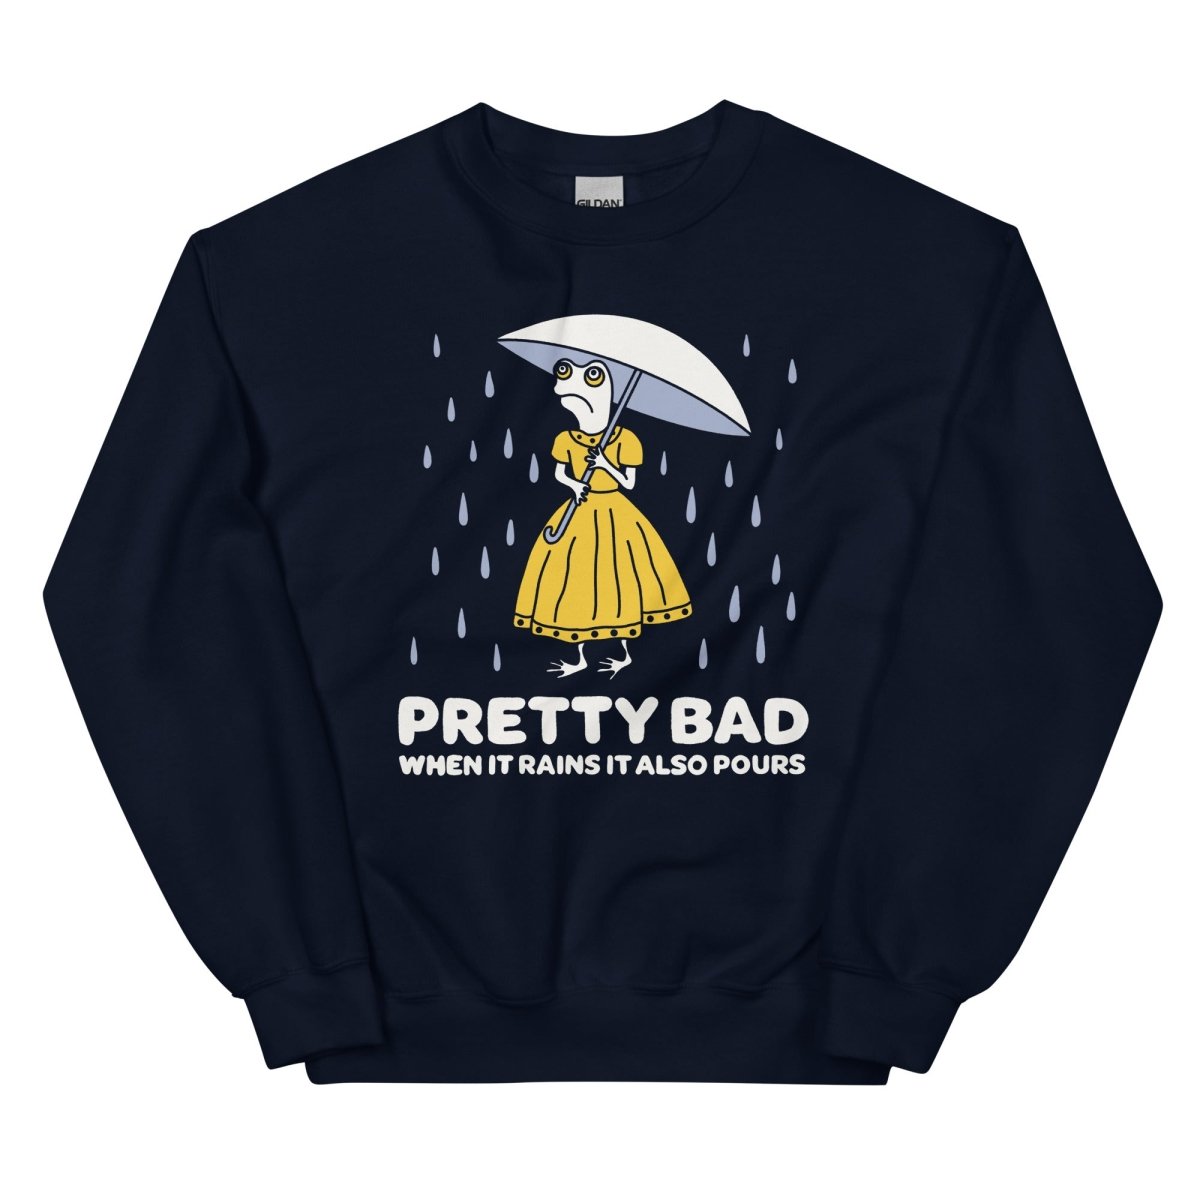 When it rains it pours sweatshirt - Sweatshirt - Pretty Bad Co.